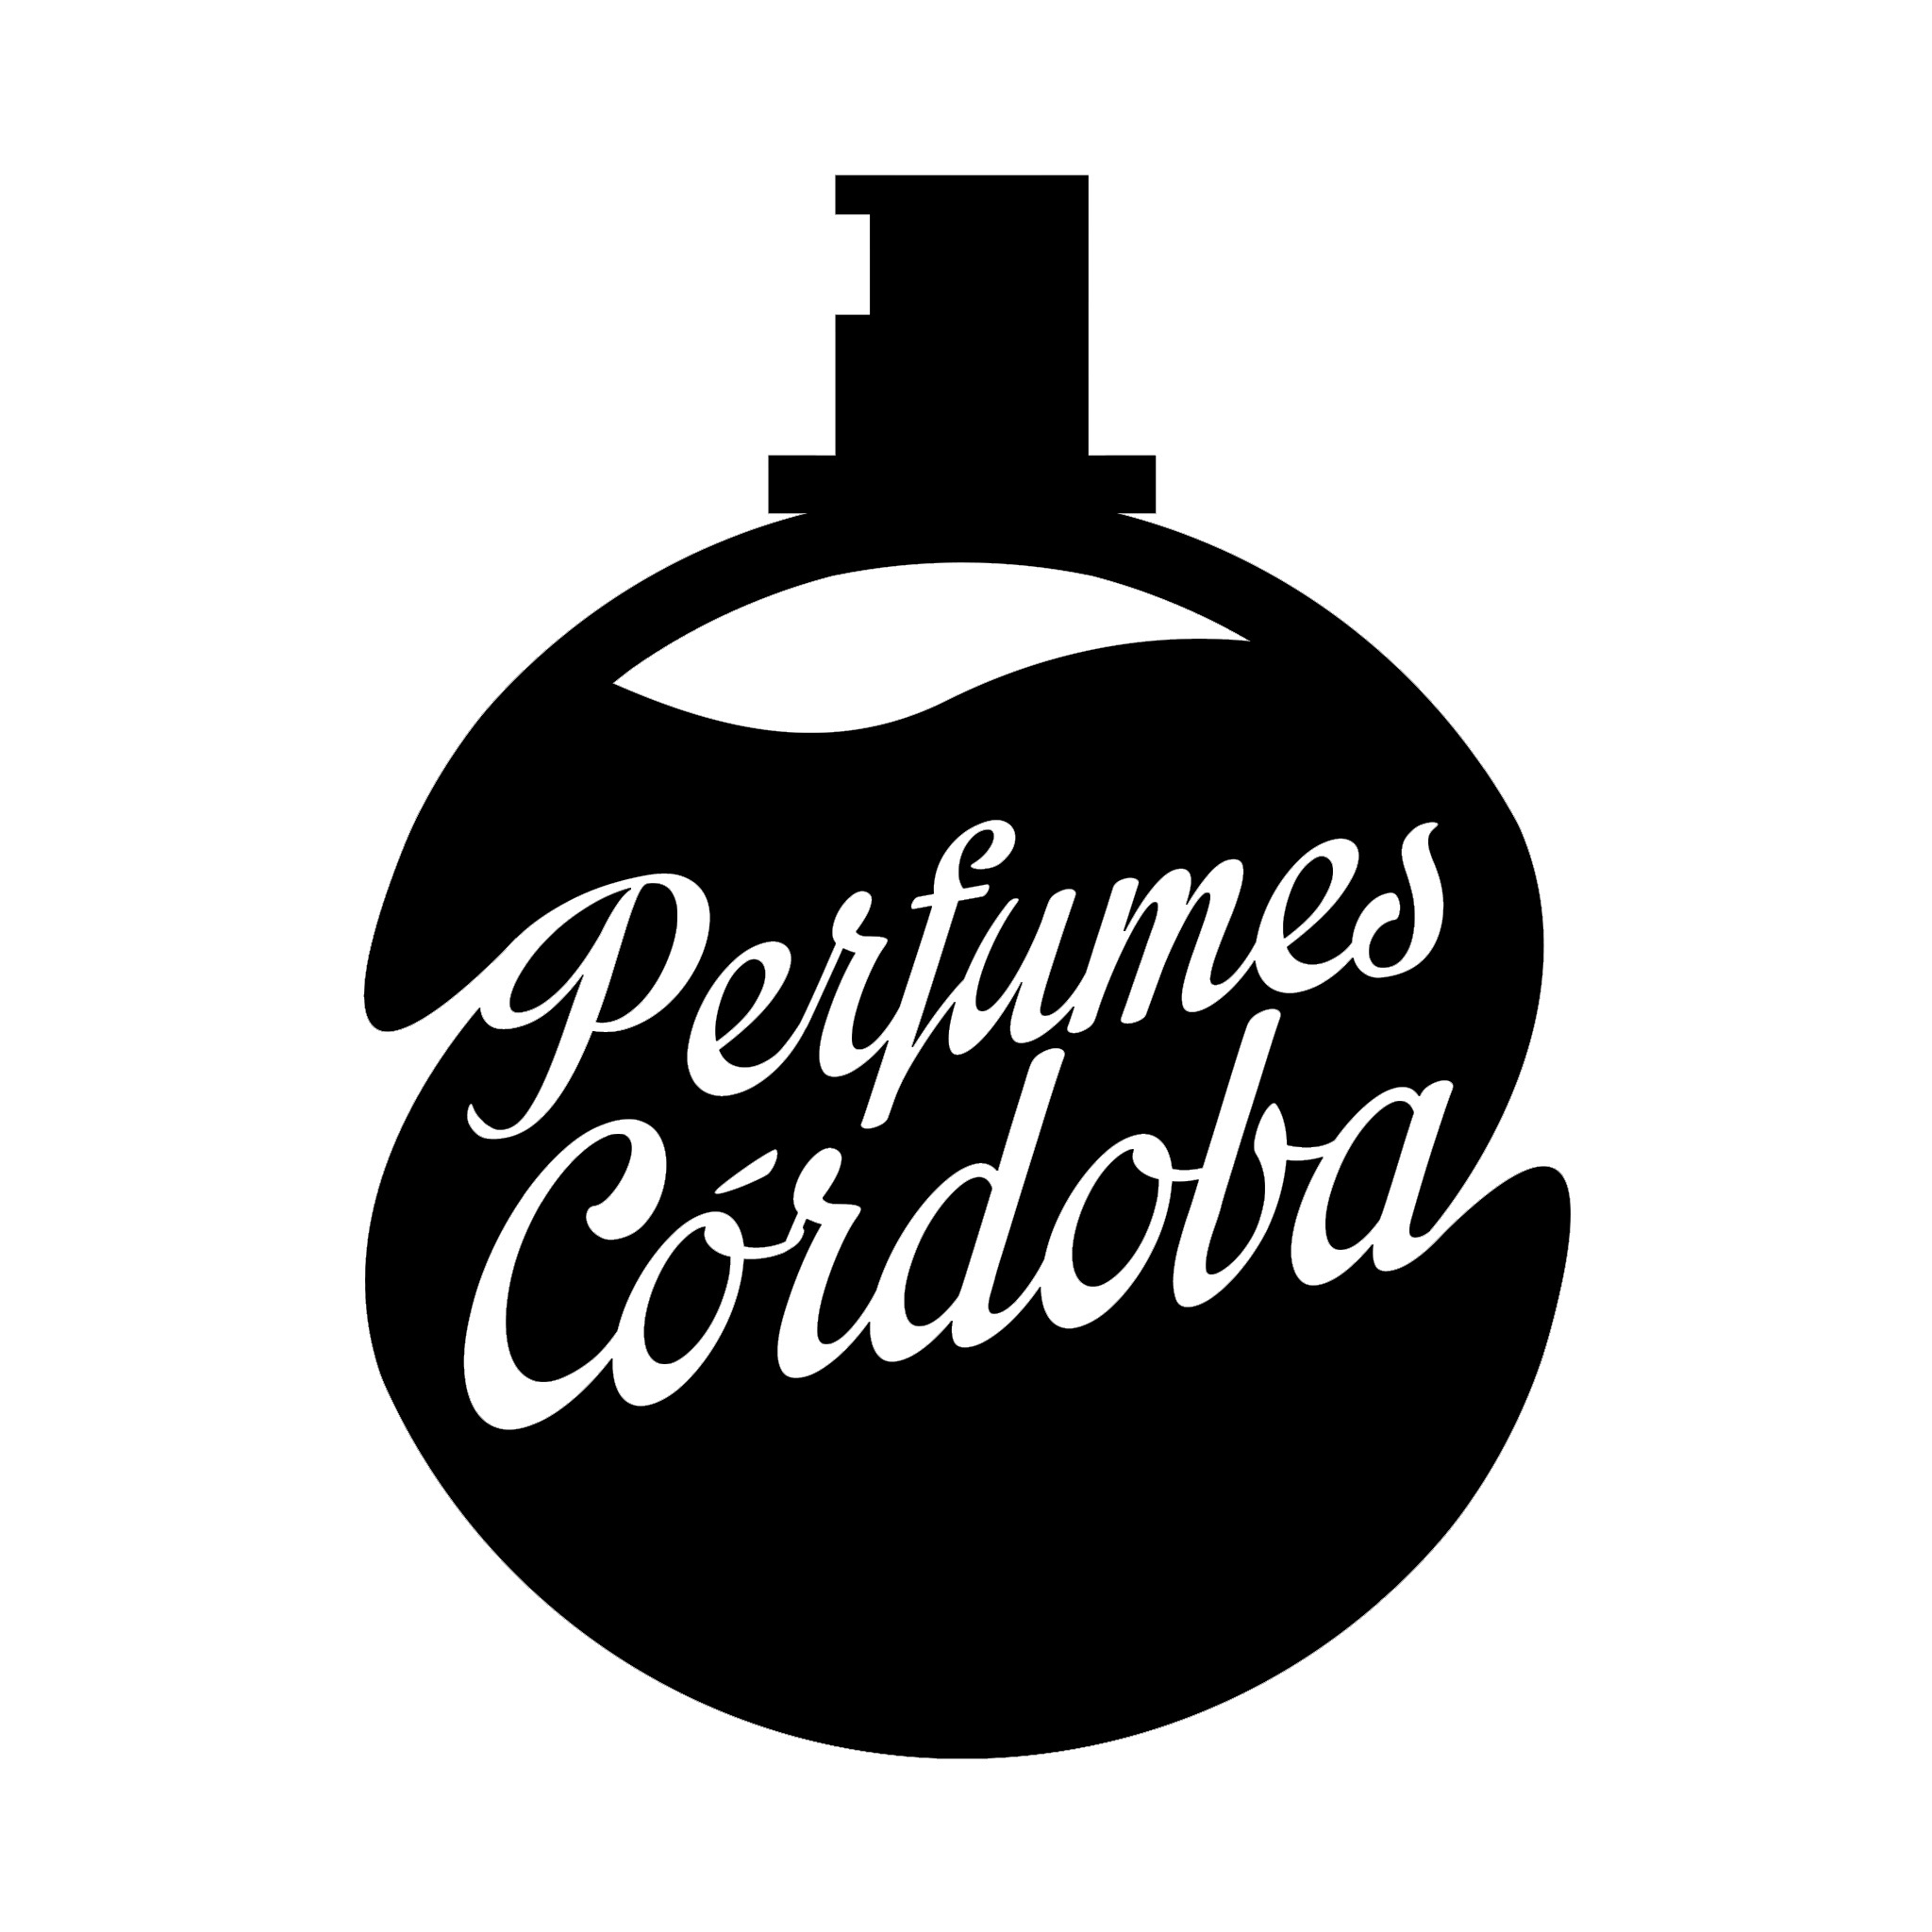 Perfumes Cordoba